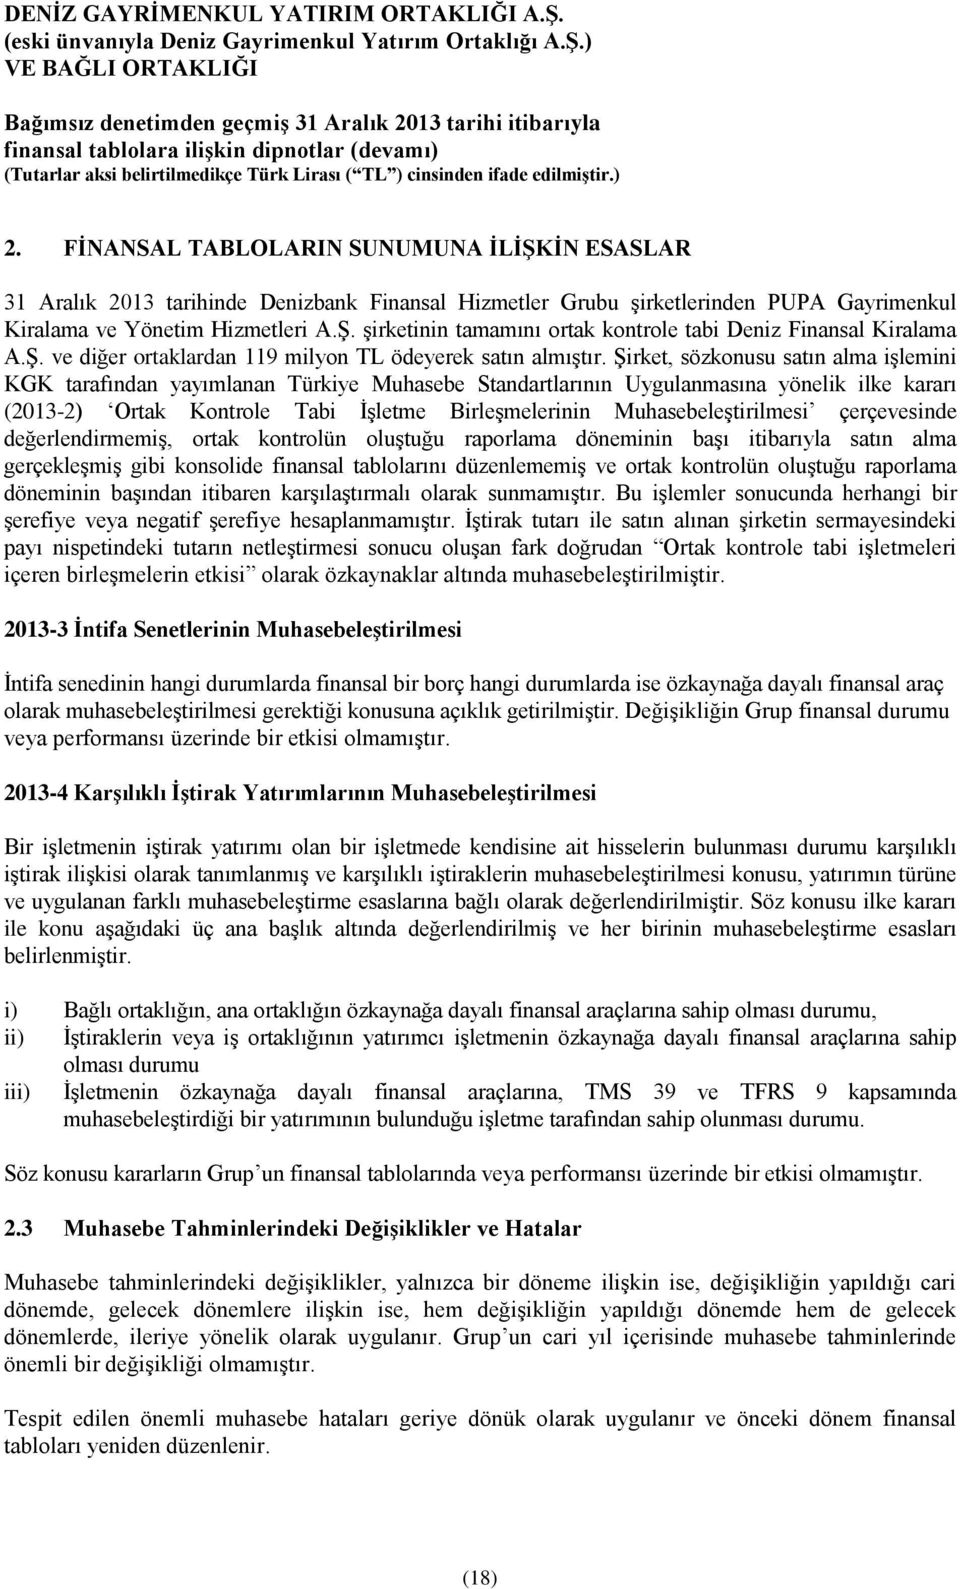 Şirket, sözkonusu satın alma işlemini KGK tarafından yayımlanan Türkiye Muhasebe Standartlarının Uygulanmasına yönelik ilke kararı (2013-2) Ortak Kontrole Tabi İşletme Birleşmelerinin